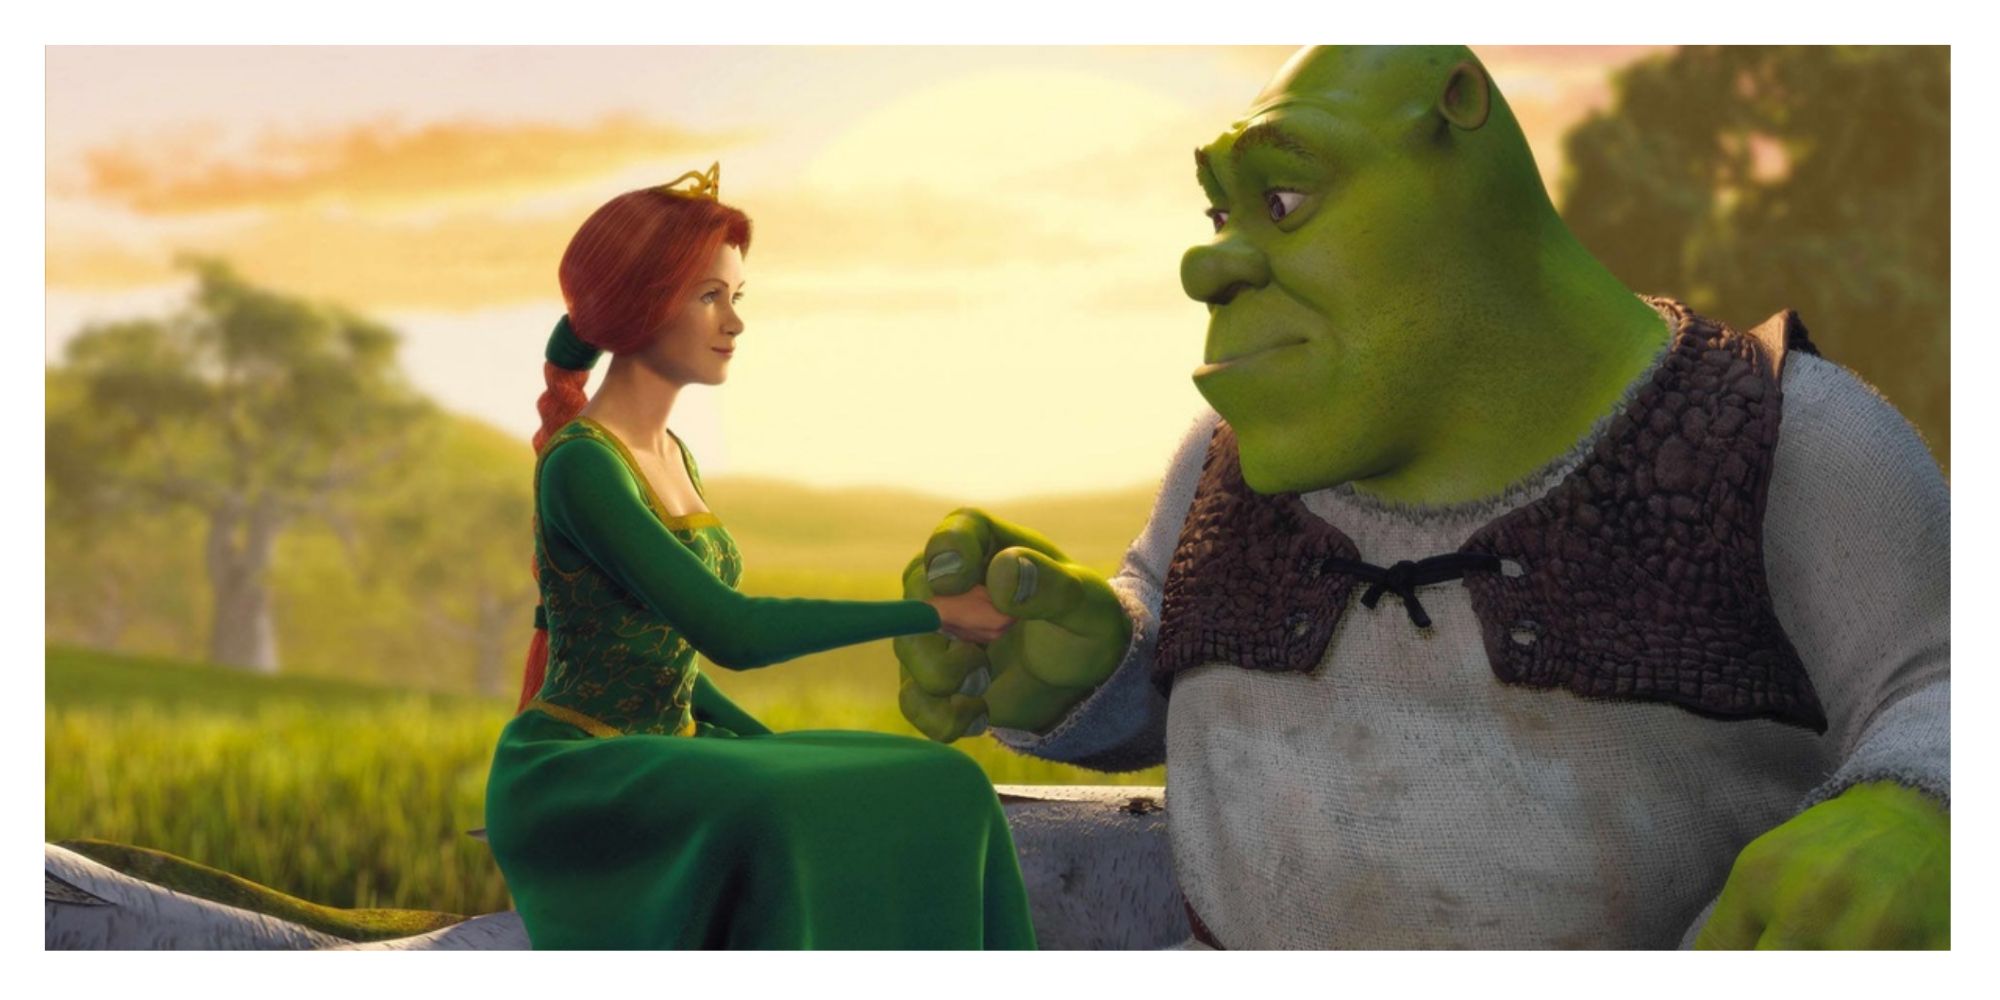 Shrek and Fiona from Shrek (2001).